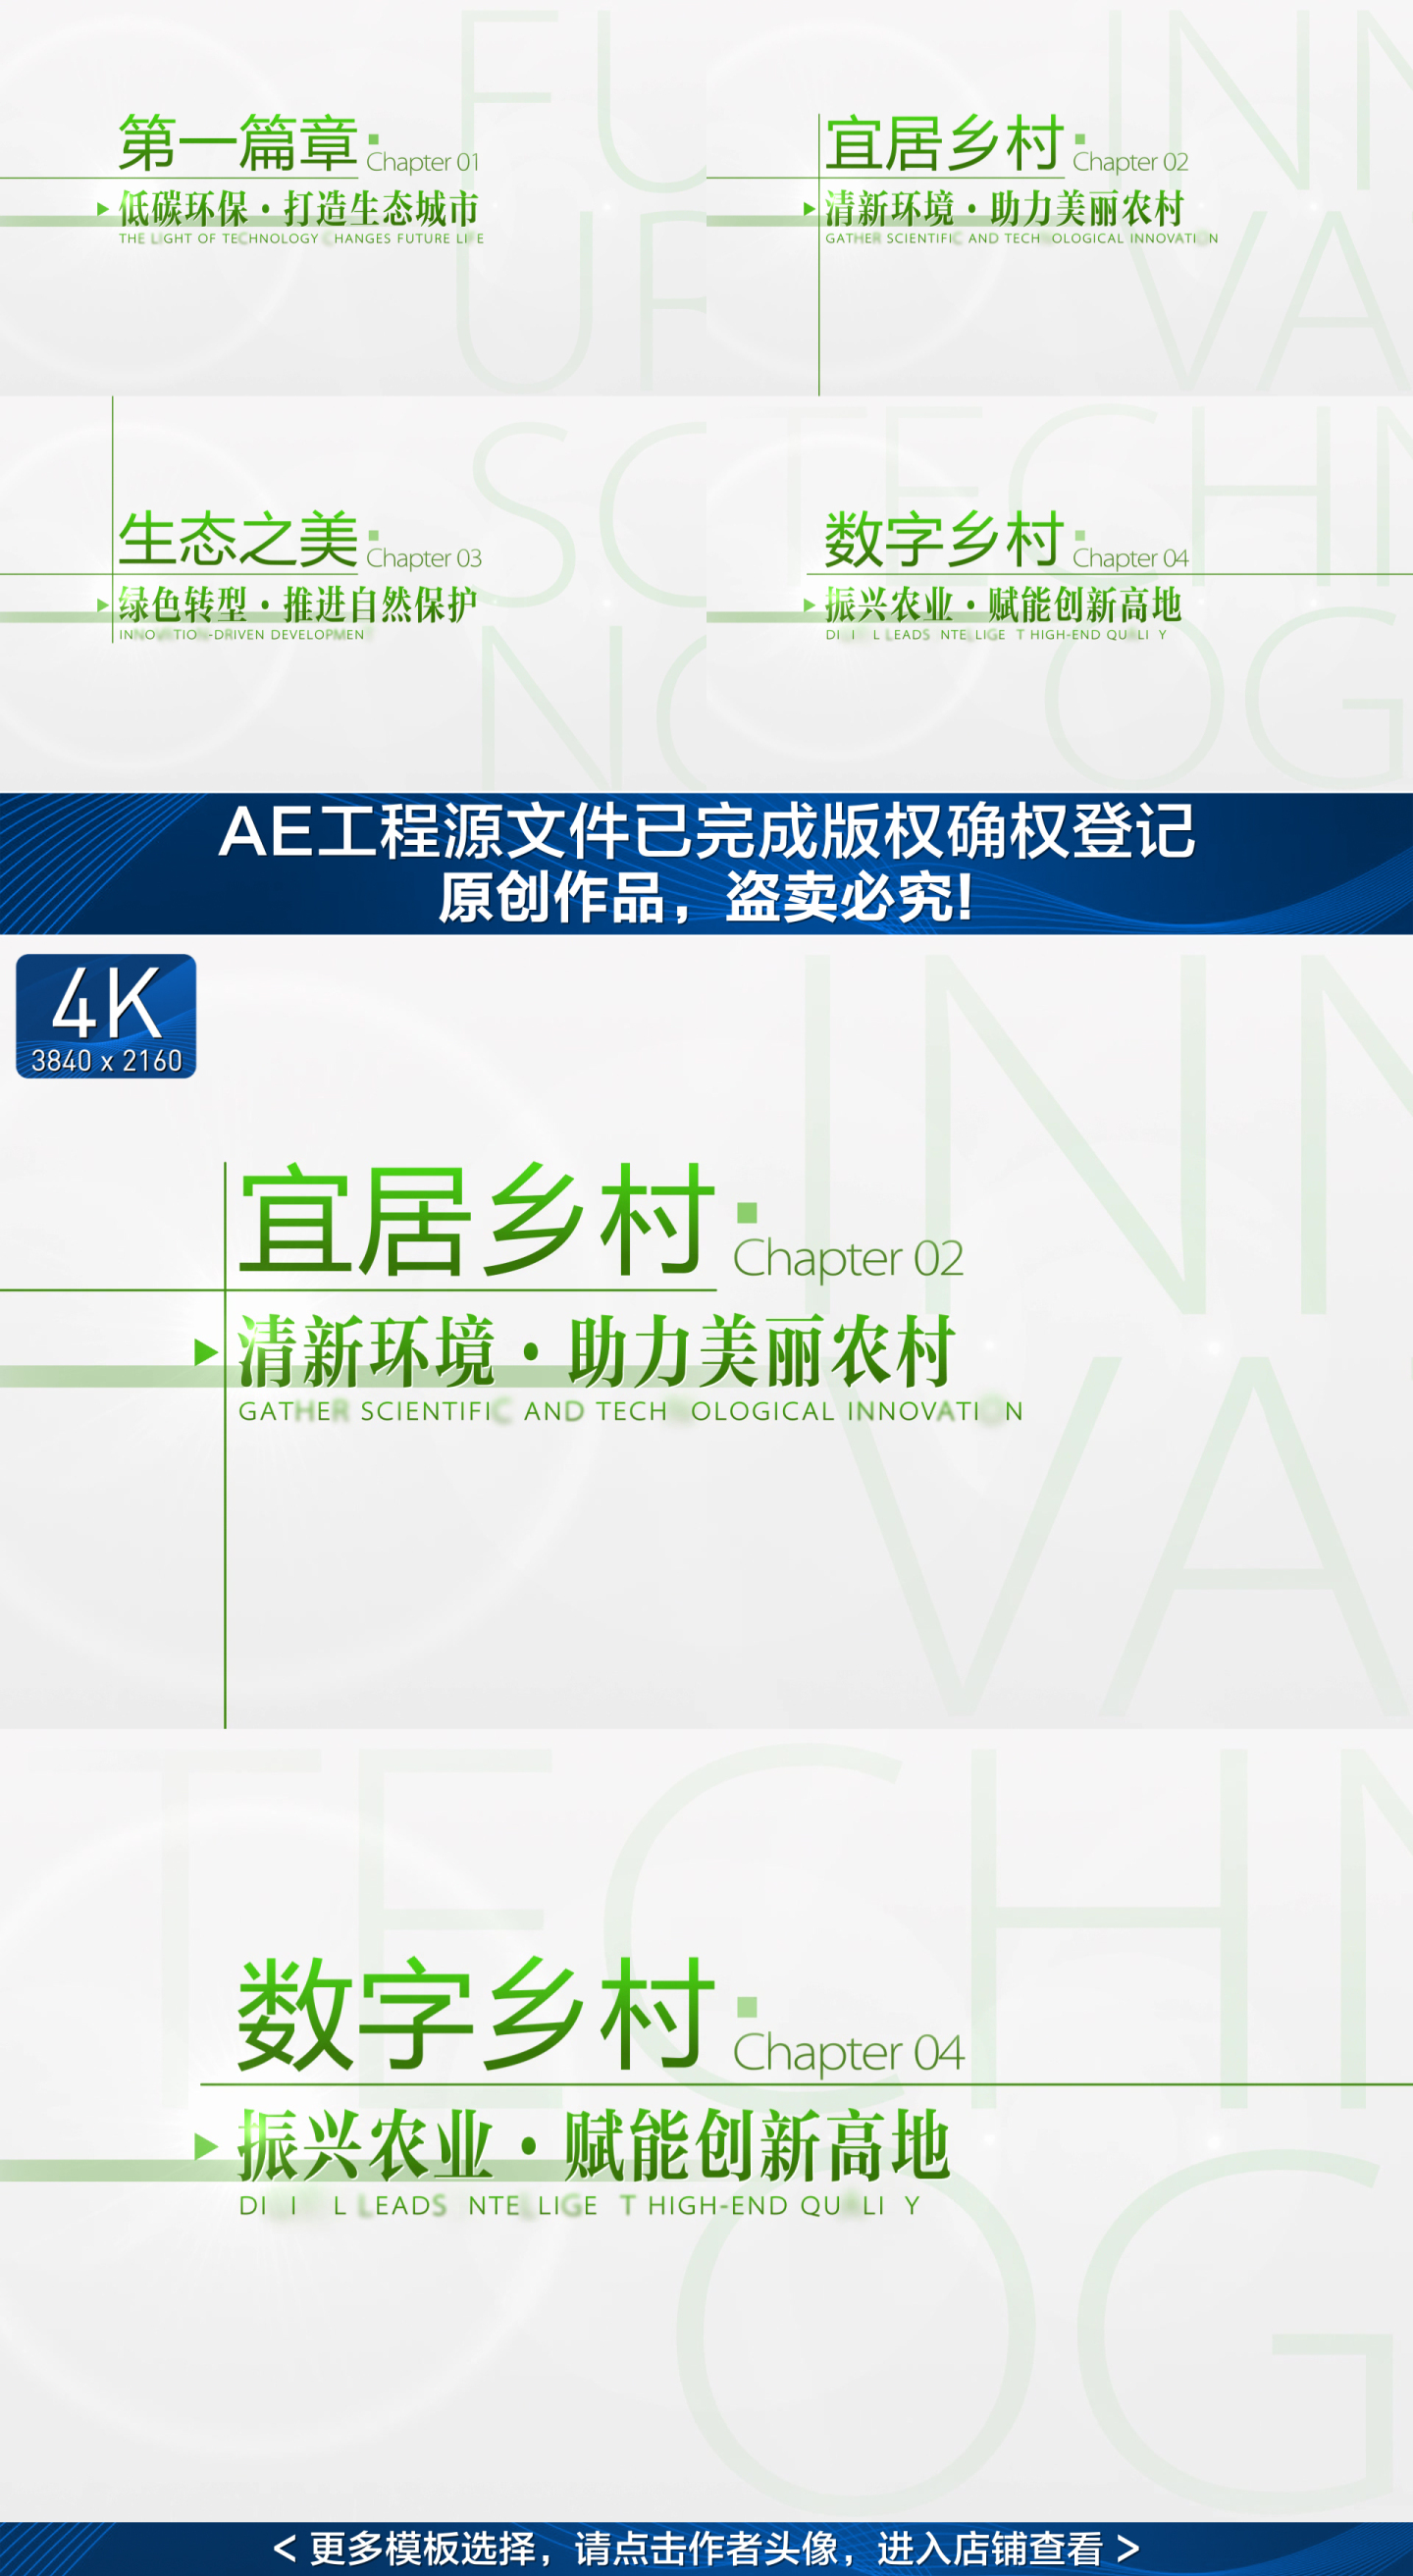 【原创】极简绿色标题环保文字幕4K